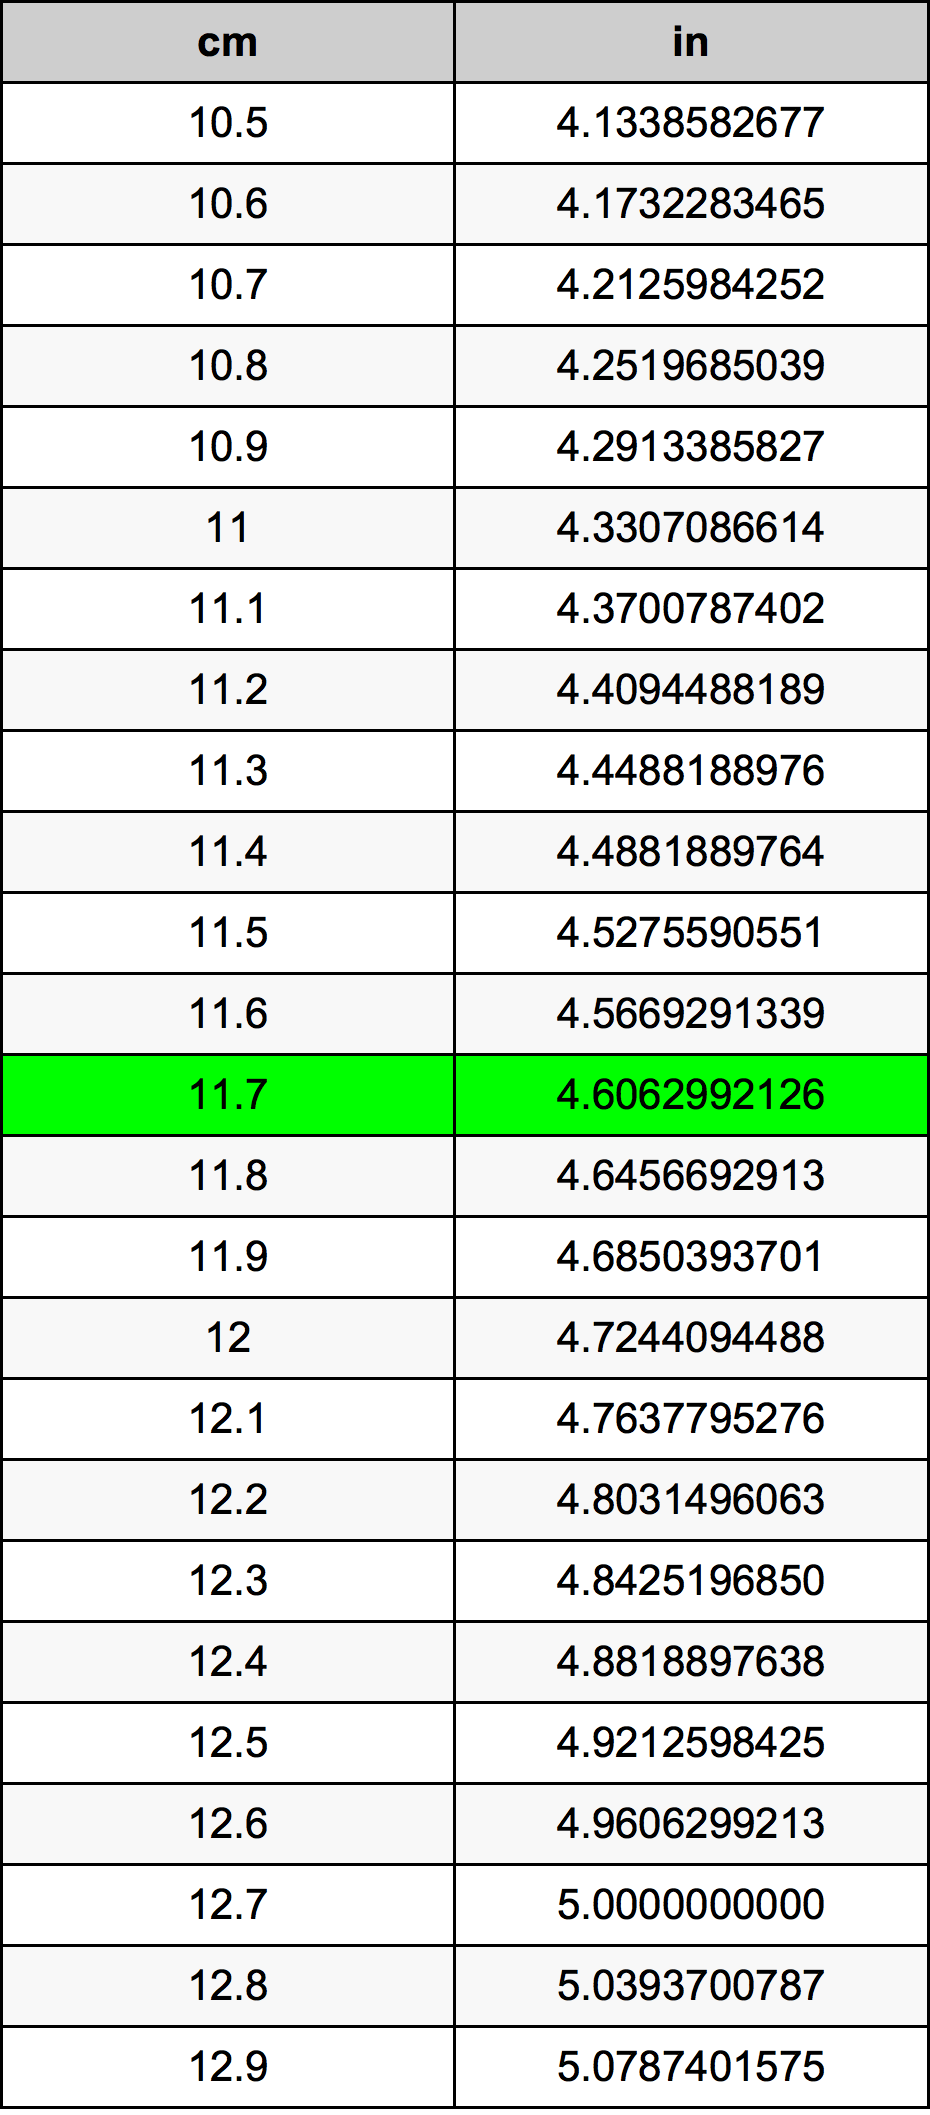 11.7 Centiméter átszámítási táblázat